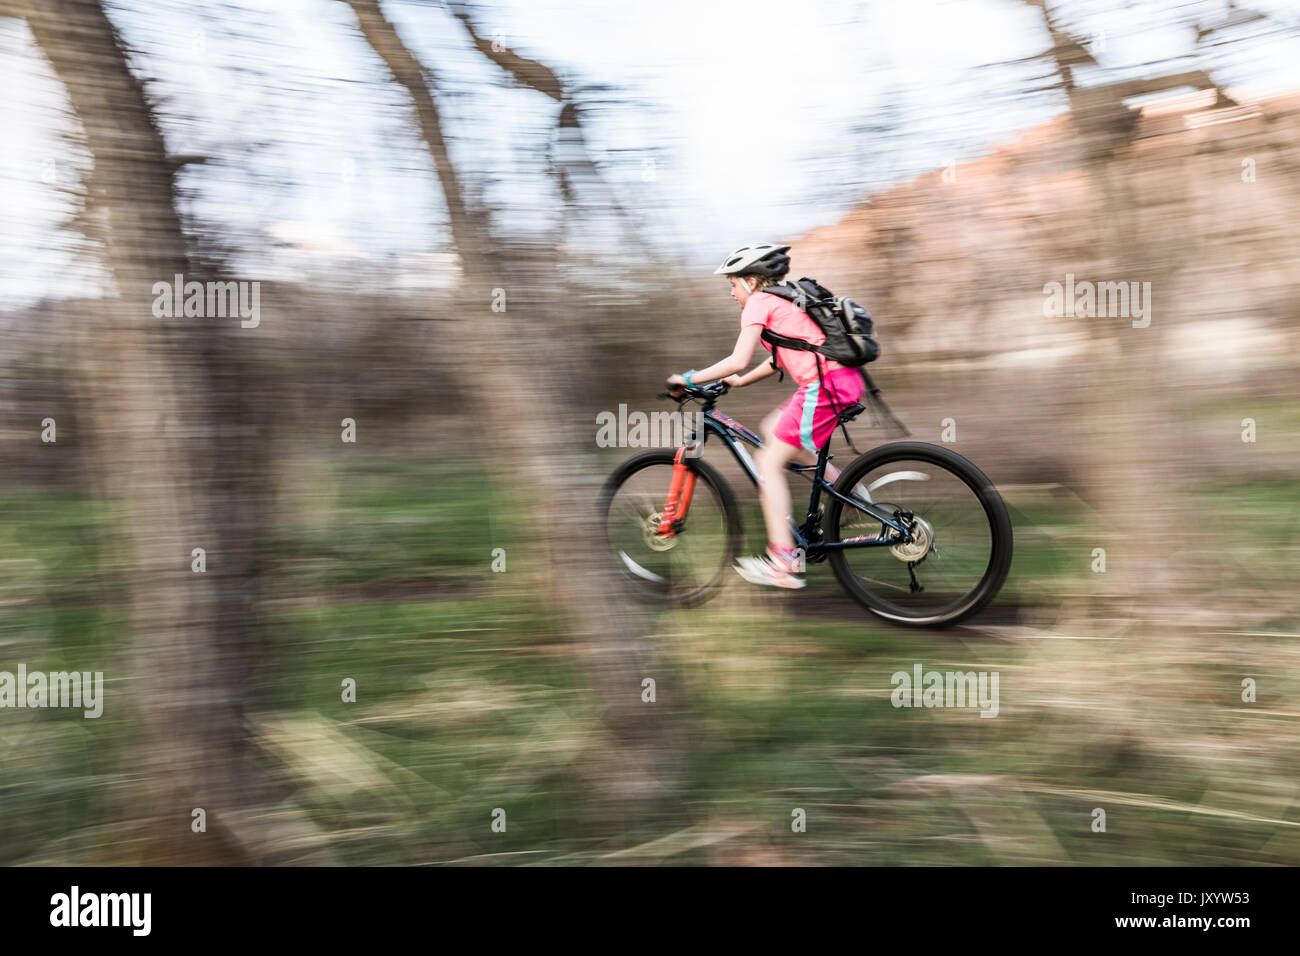 Kaukasische Mädchen reiten Fahrrad auf Waldweg Stockfoto